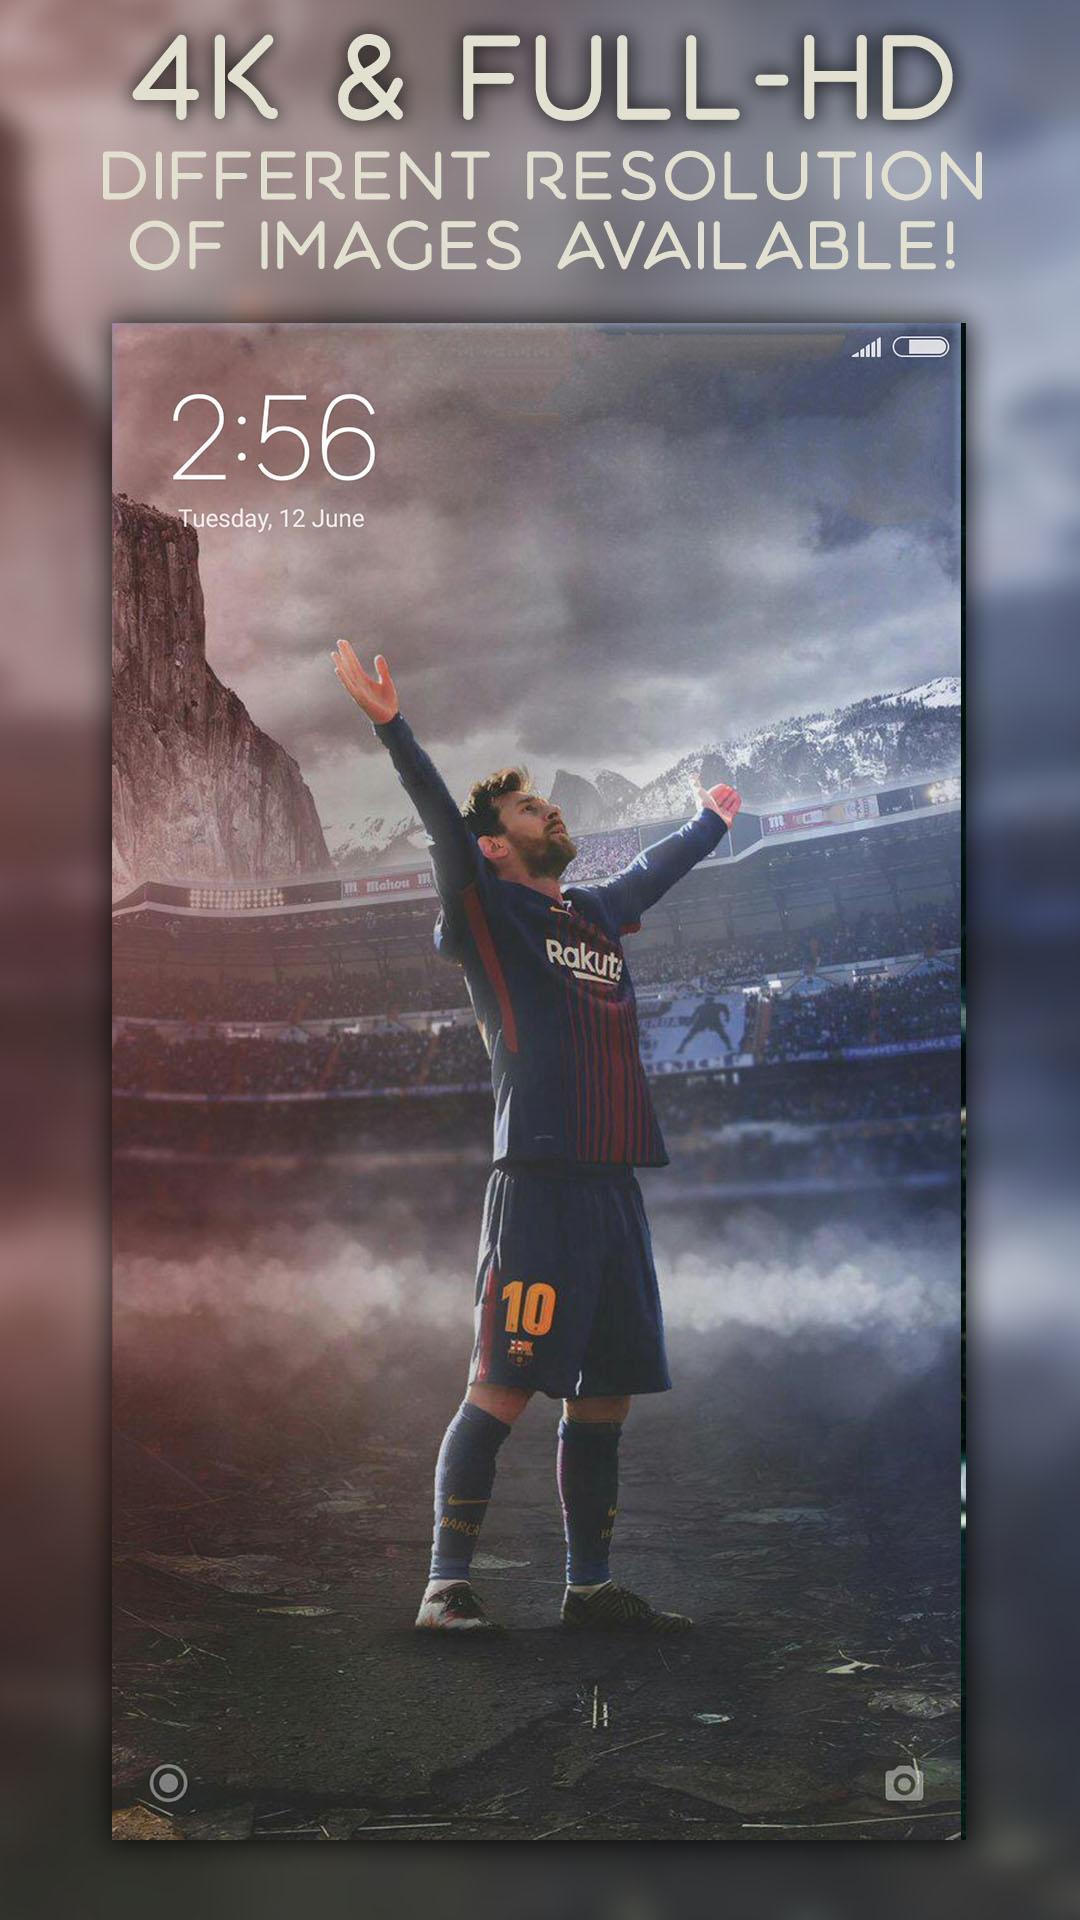 Với Messi wallpaper cho Android, bạn sẽ được thấy tài năng và sự sáng tạo của Leo Messi thông qua những hình nền đẹp mắt. Đây là sự trải nghiệm hoàn toàn khác biệt và thú vị mà bạn sẽ không muốn bỏ lỡ.